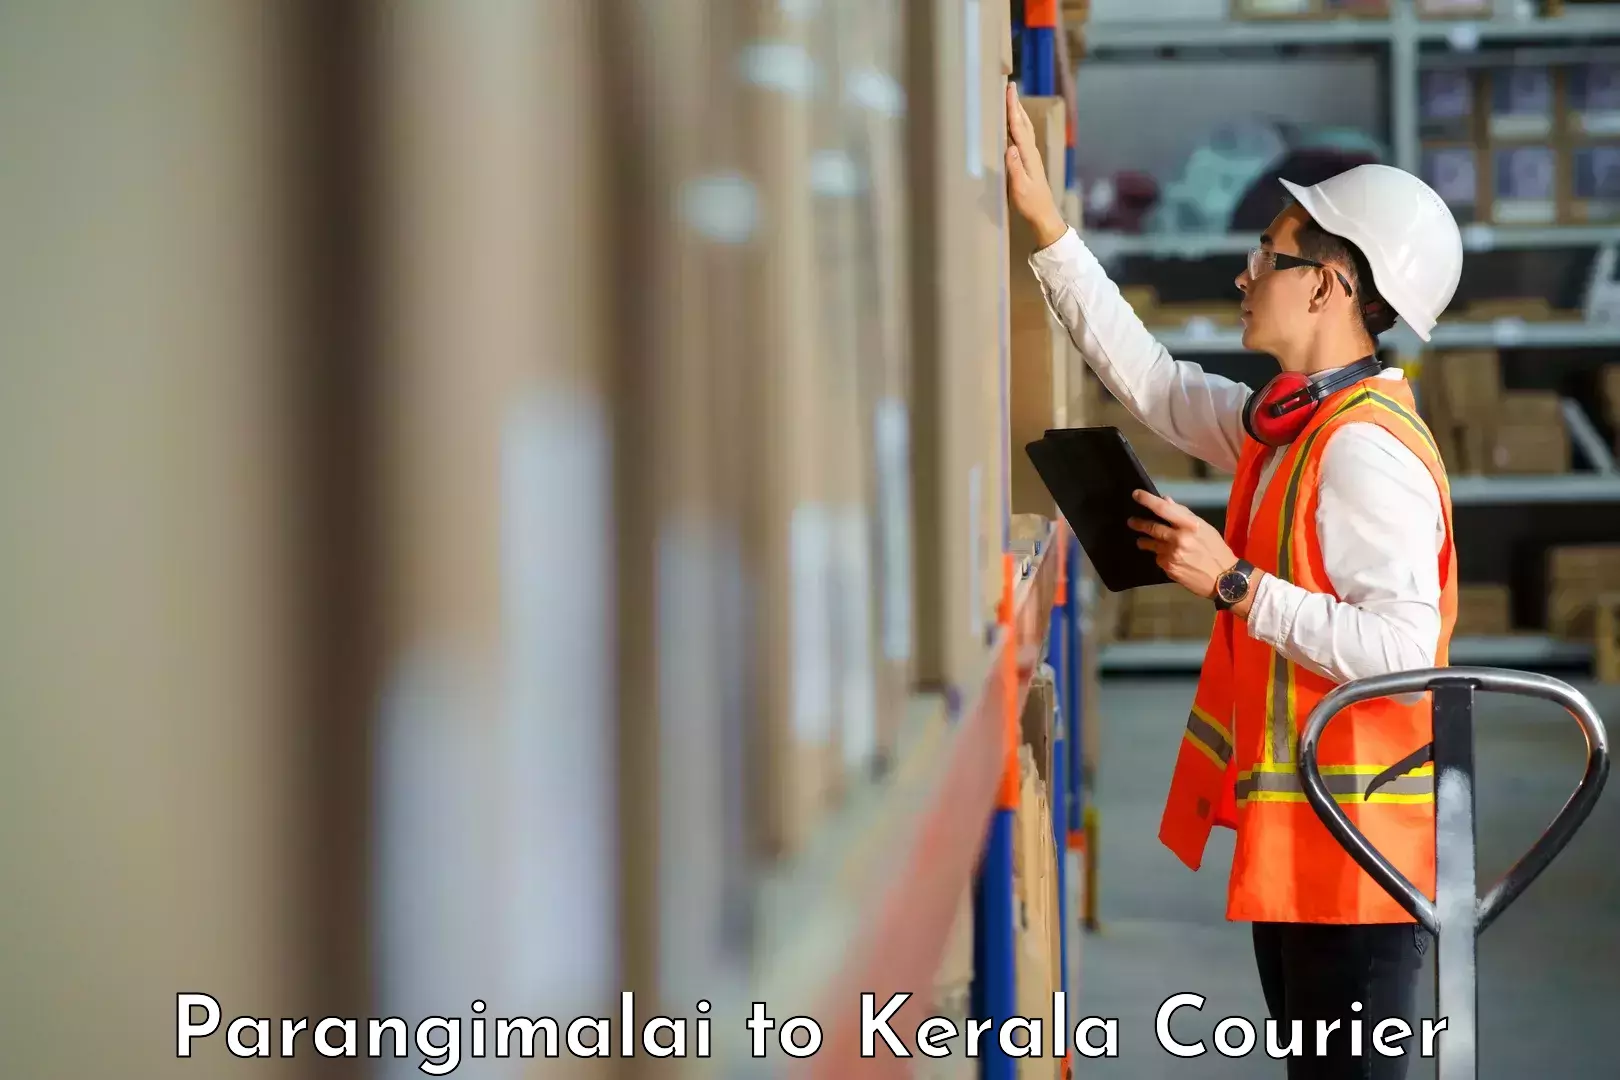 Cost-effective courier options Parangimalai to Kalanjoor